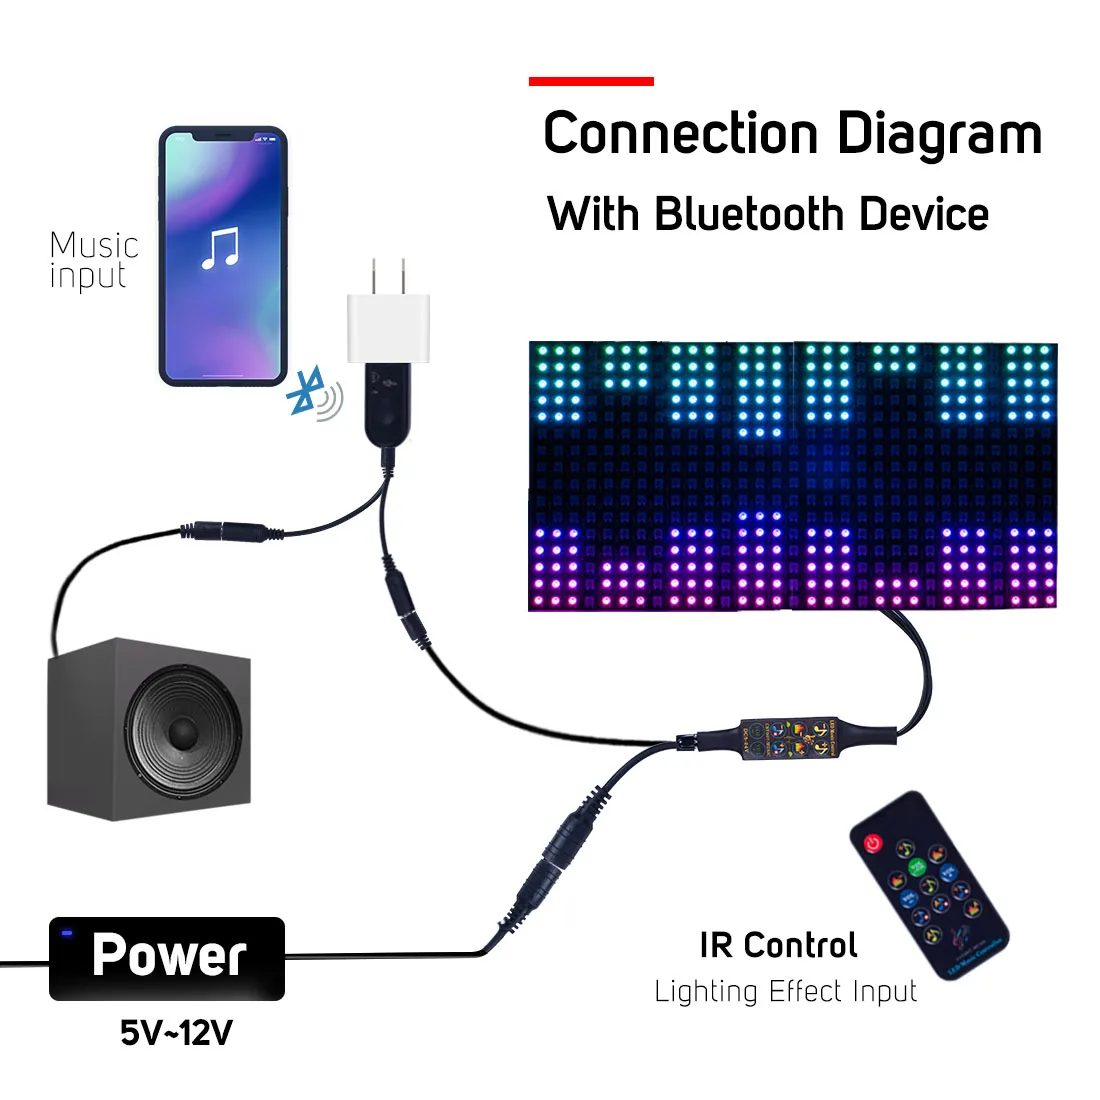 При прослушивании музыки по Bluetooth контроллер DC5-24V инфракрасный 13 кнопок пульта дистанционного управления WS2812B WS2811 SK6812 светодиодные полосы матрица Панель 512 Пиксели